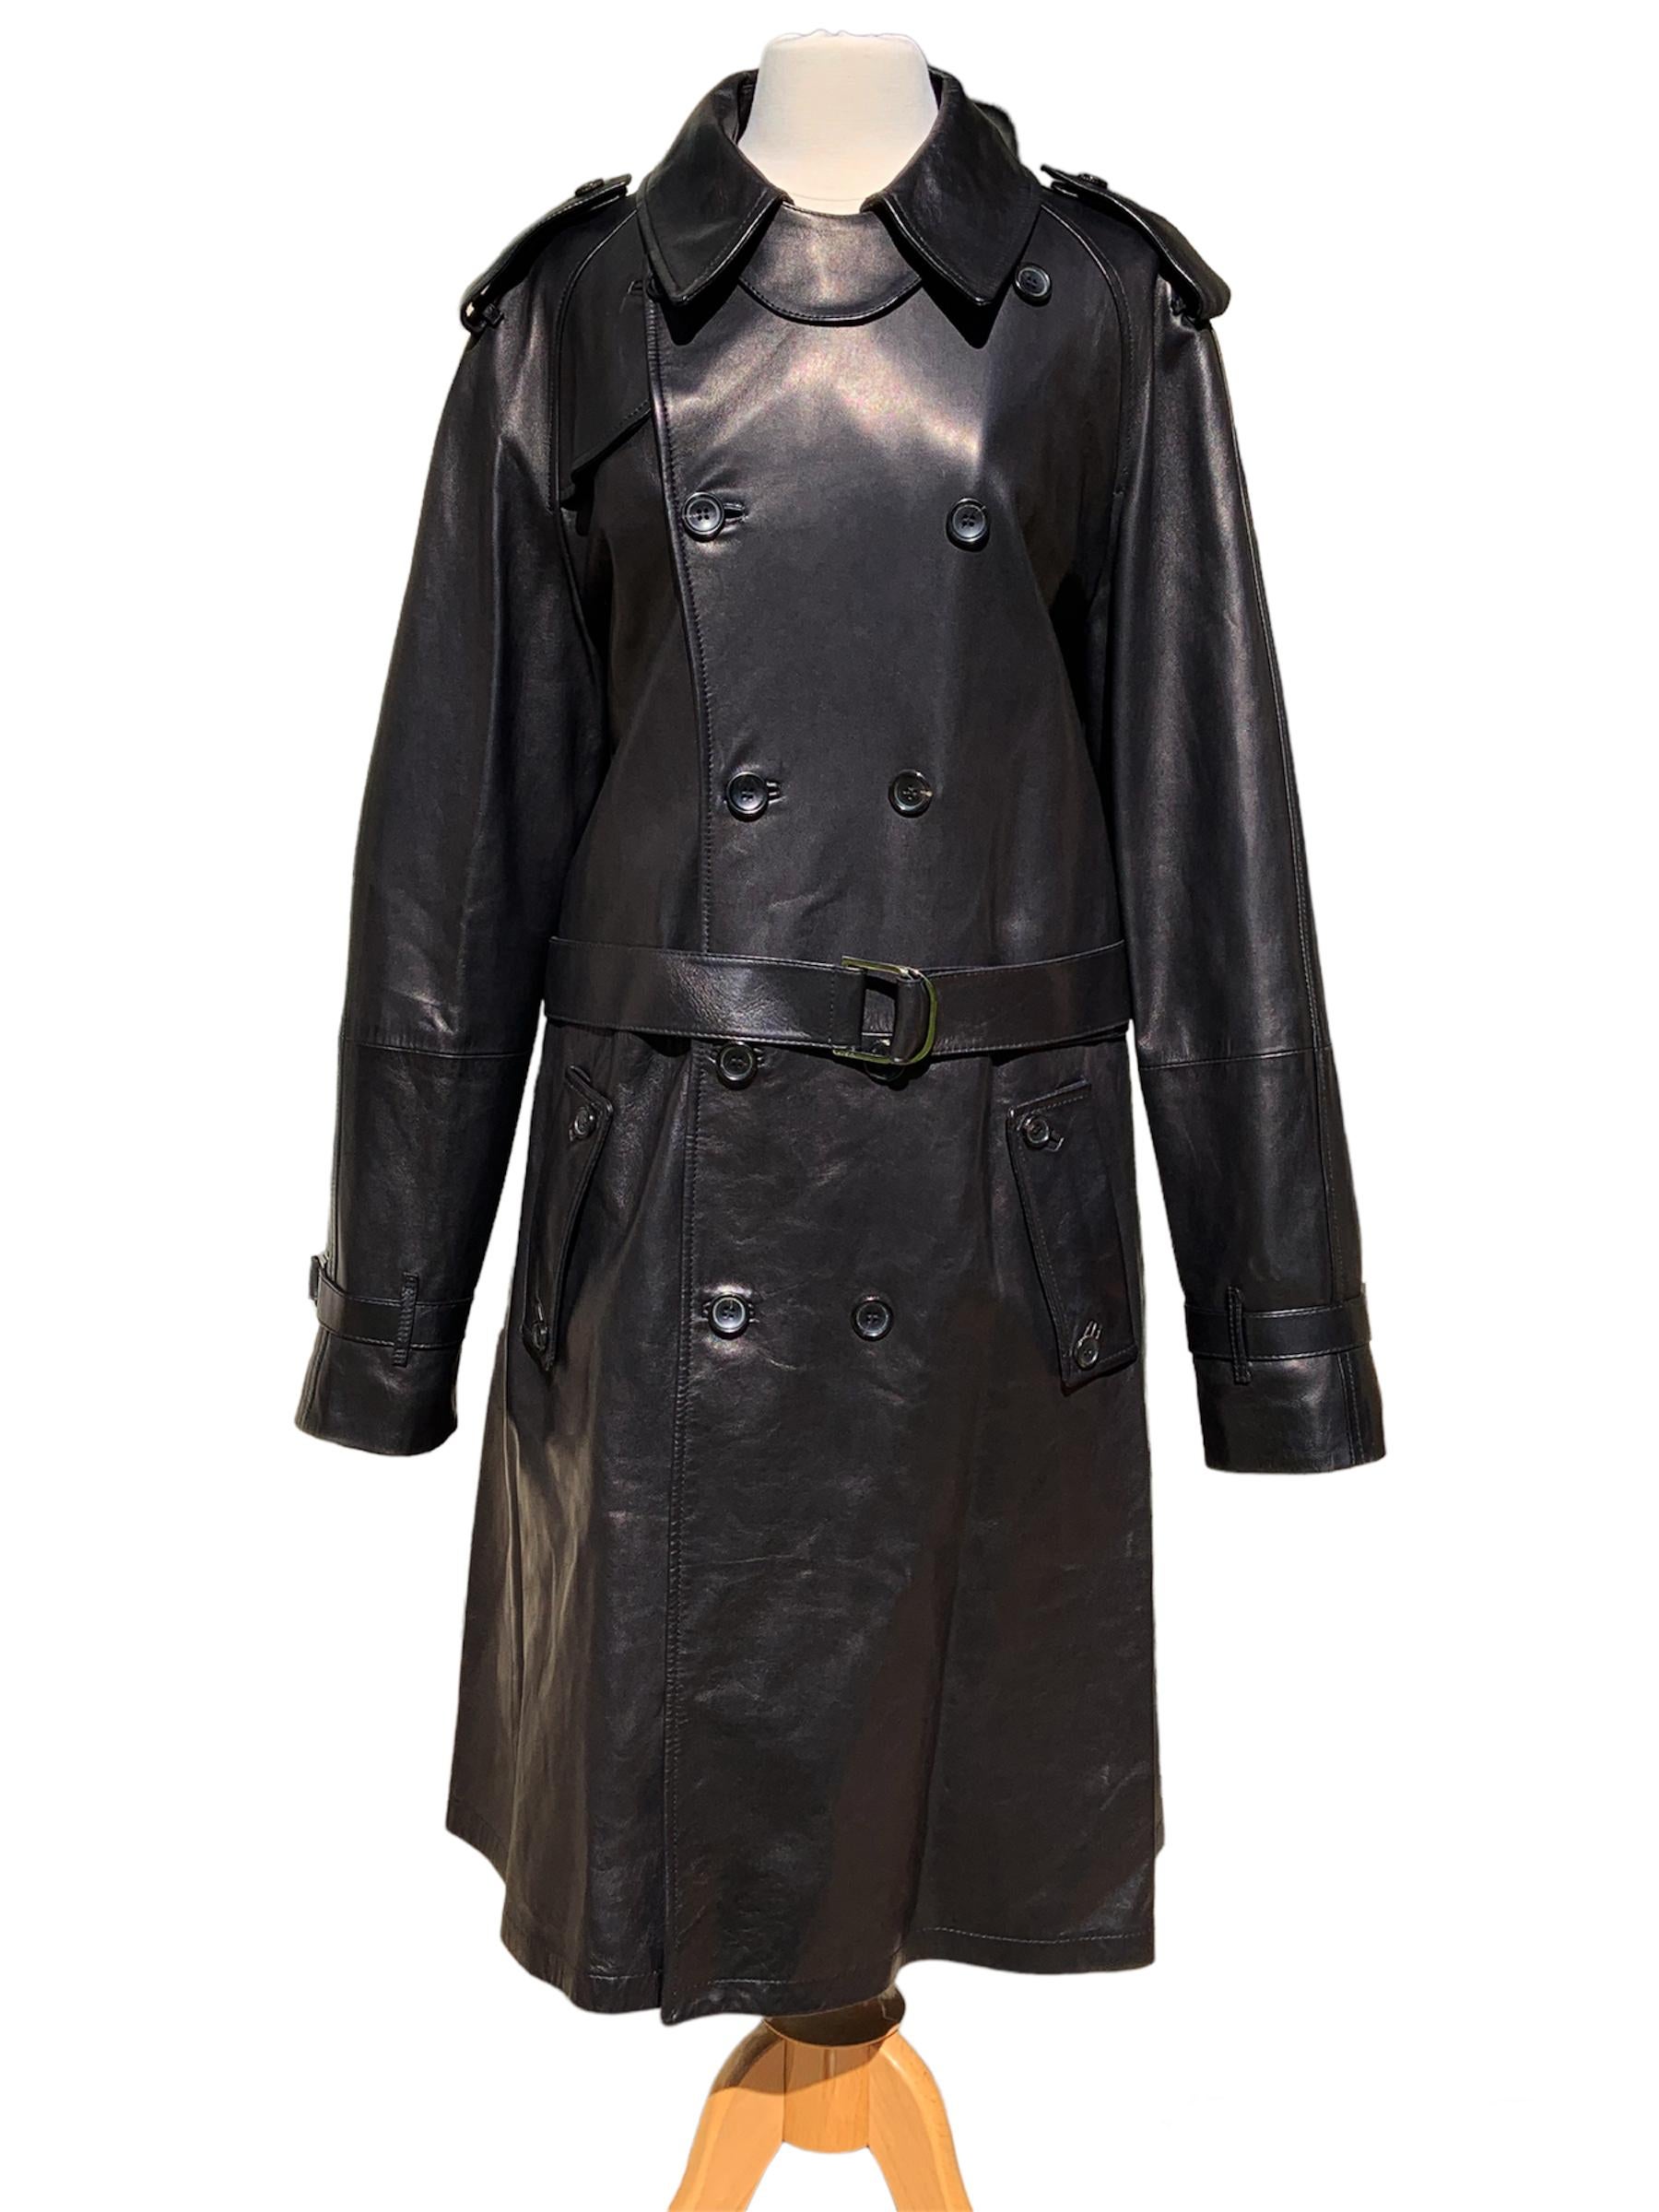 Le nouveau manteau en cuir noir iconique de Tom Ford pour Gucci.
Collection F/W 2001
Taille italienne 54 ( US 44)
Cuir véritable, croisé, épaulettes, ceinture amovible, poches latérales, poche intérieure.
Fente au dos avec fermeture à boutons,